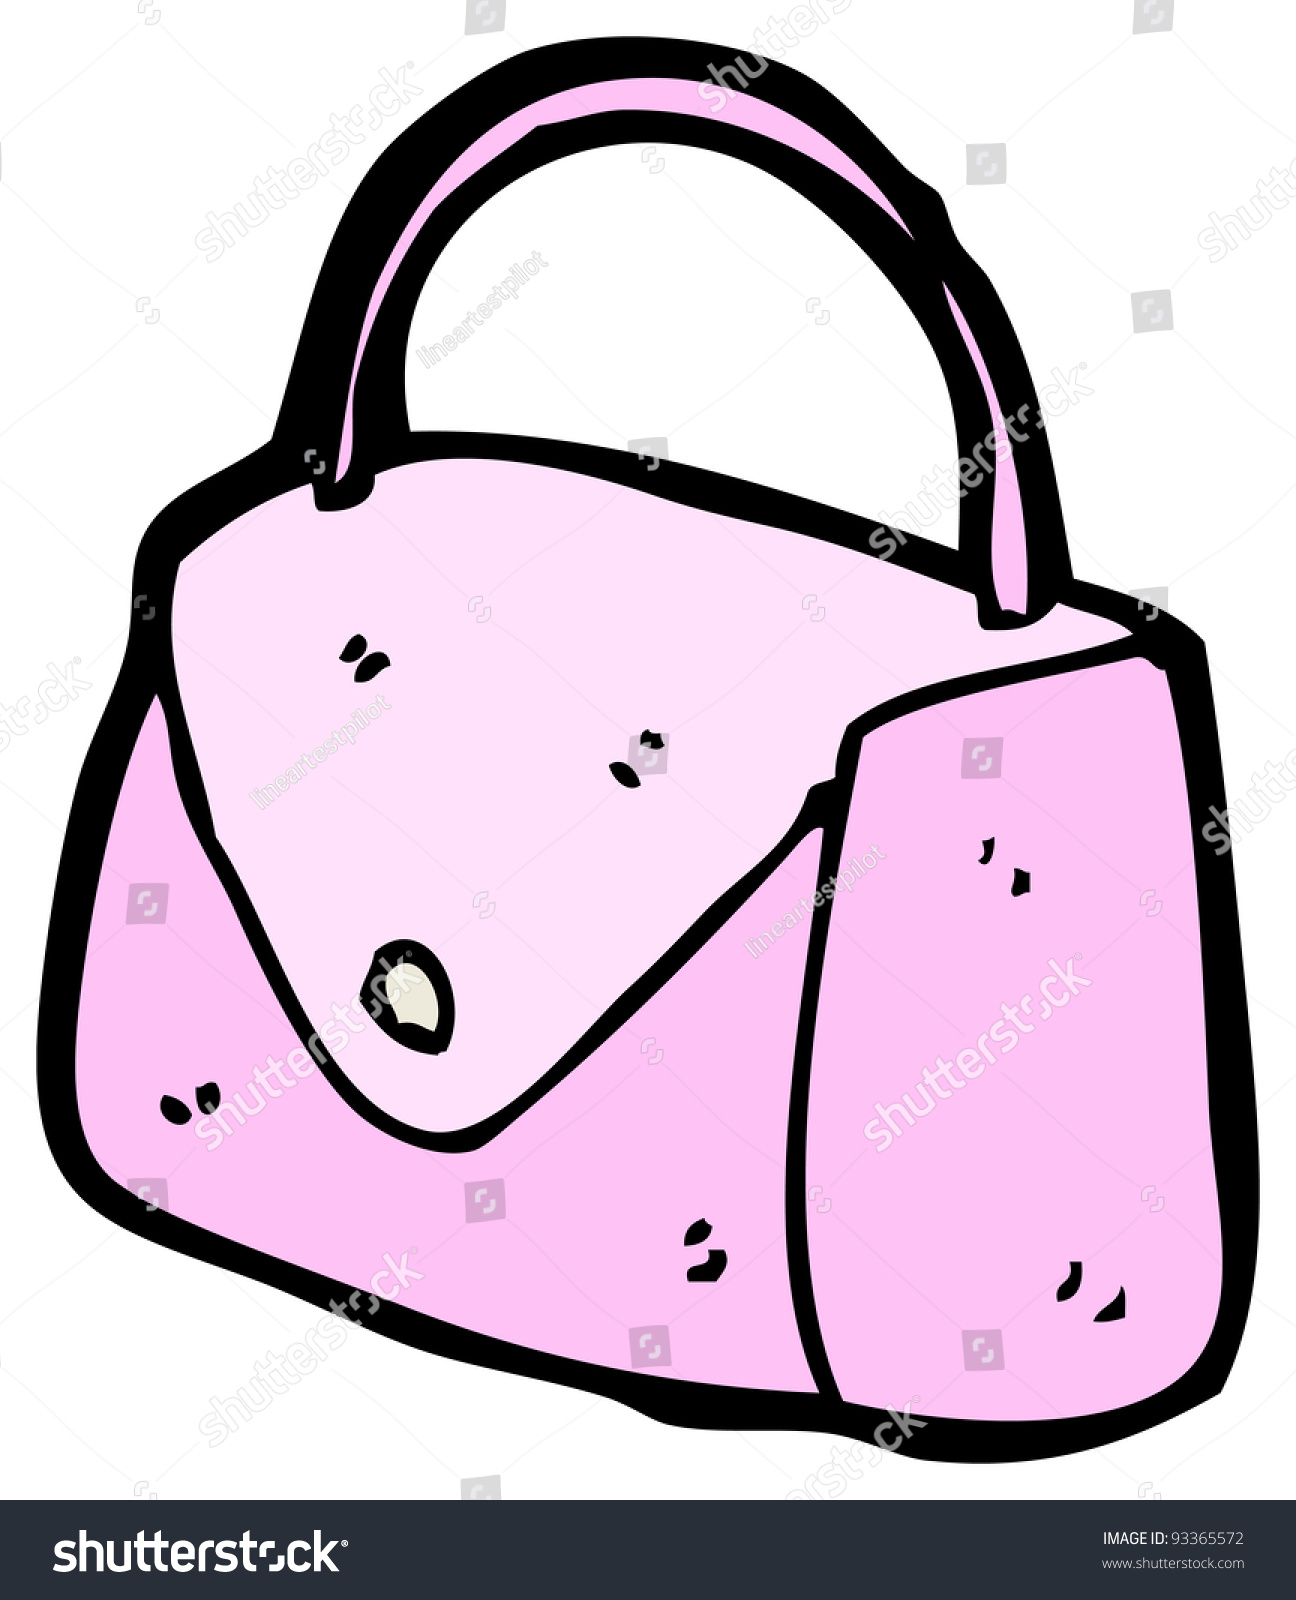 Pink Handbag Cartoon Stock Illustration 93365572 - Shutterstock